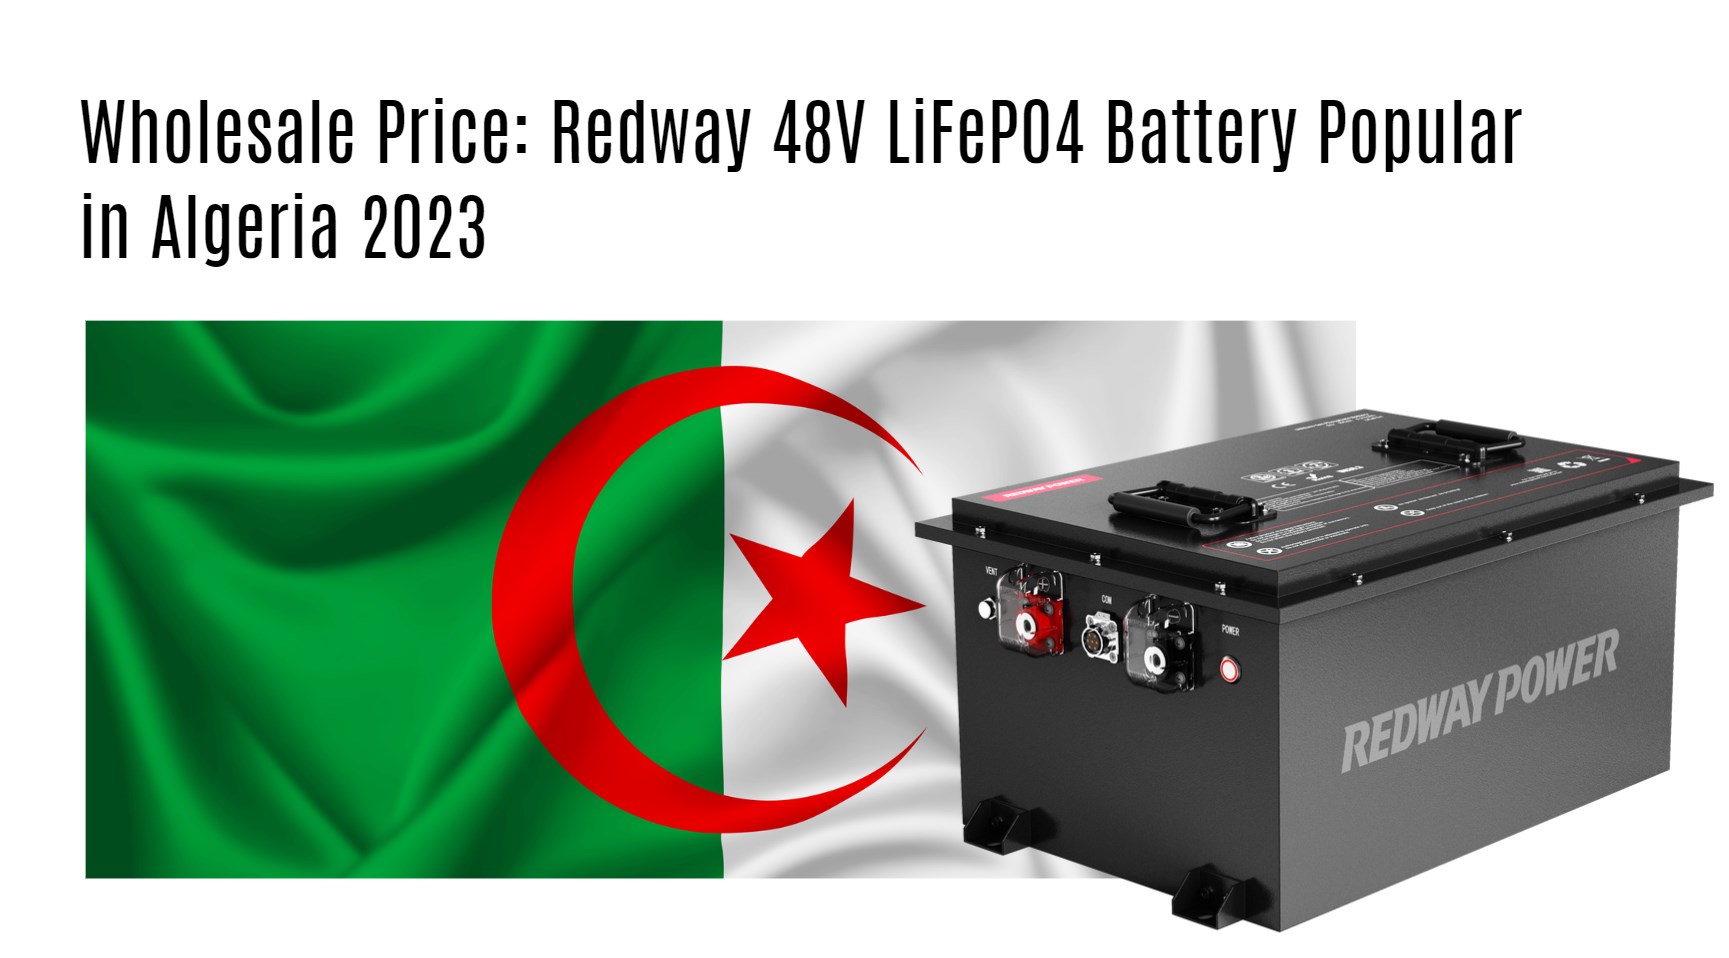 Wholesale Price: Redway 48V LiFePO4 Battery Popular in Algeria 2023